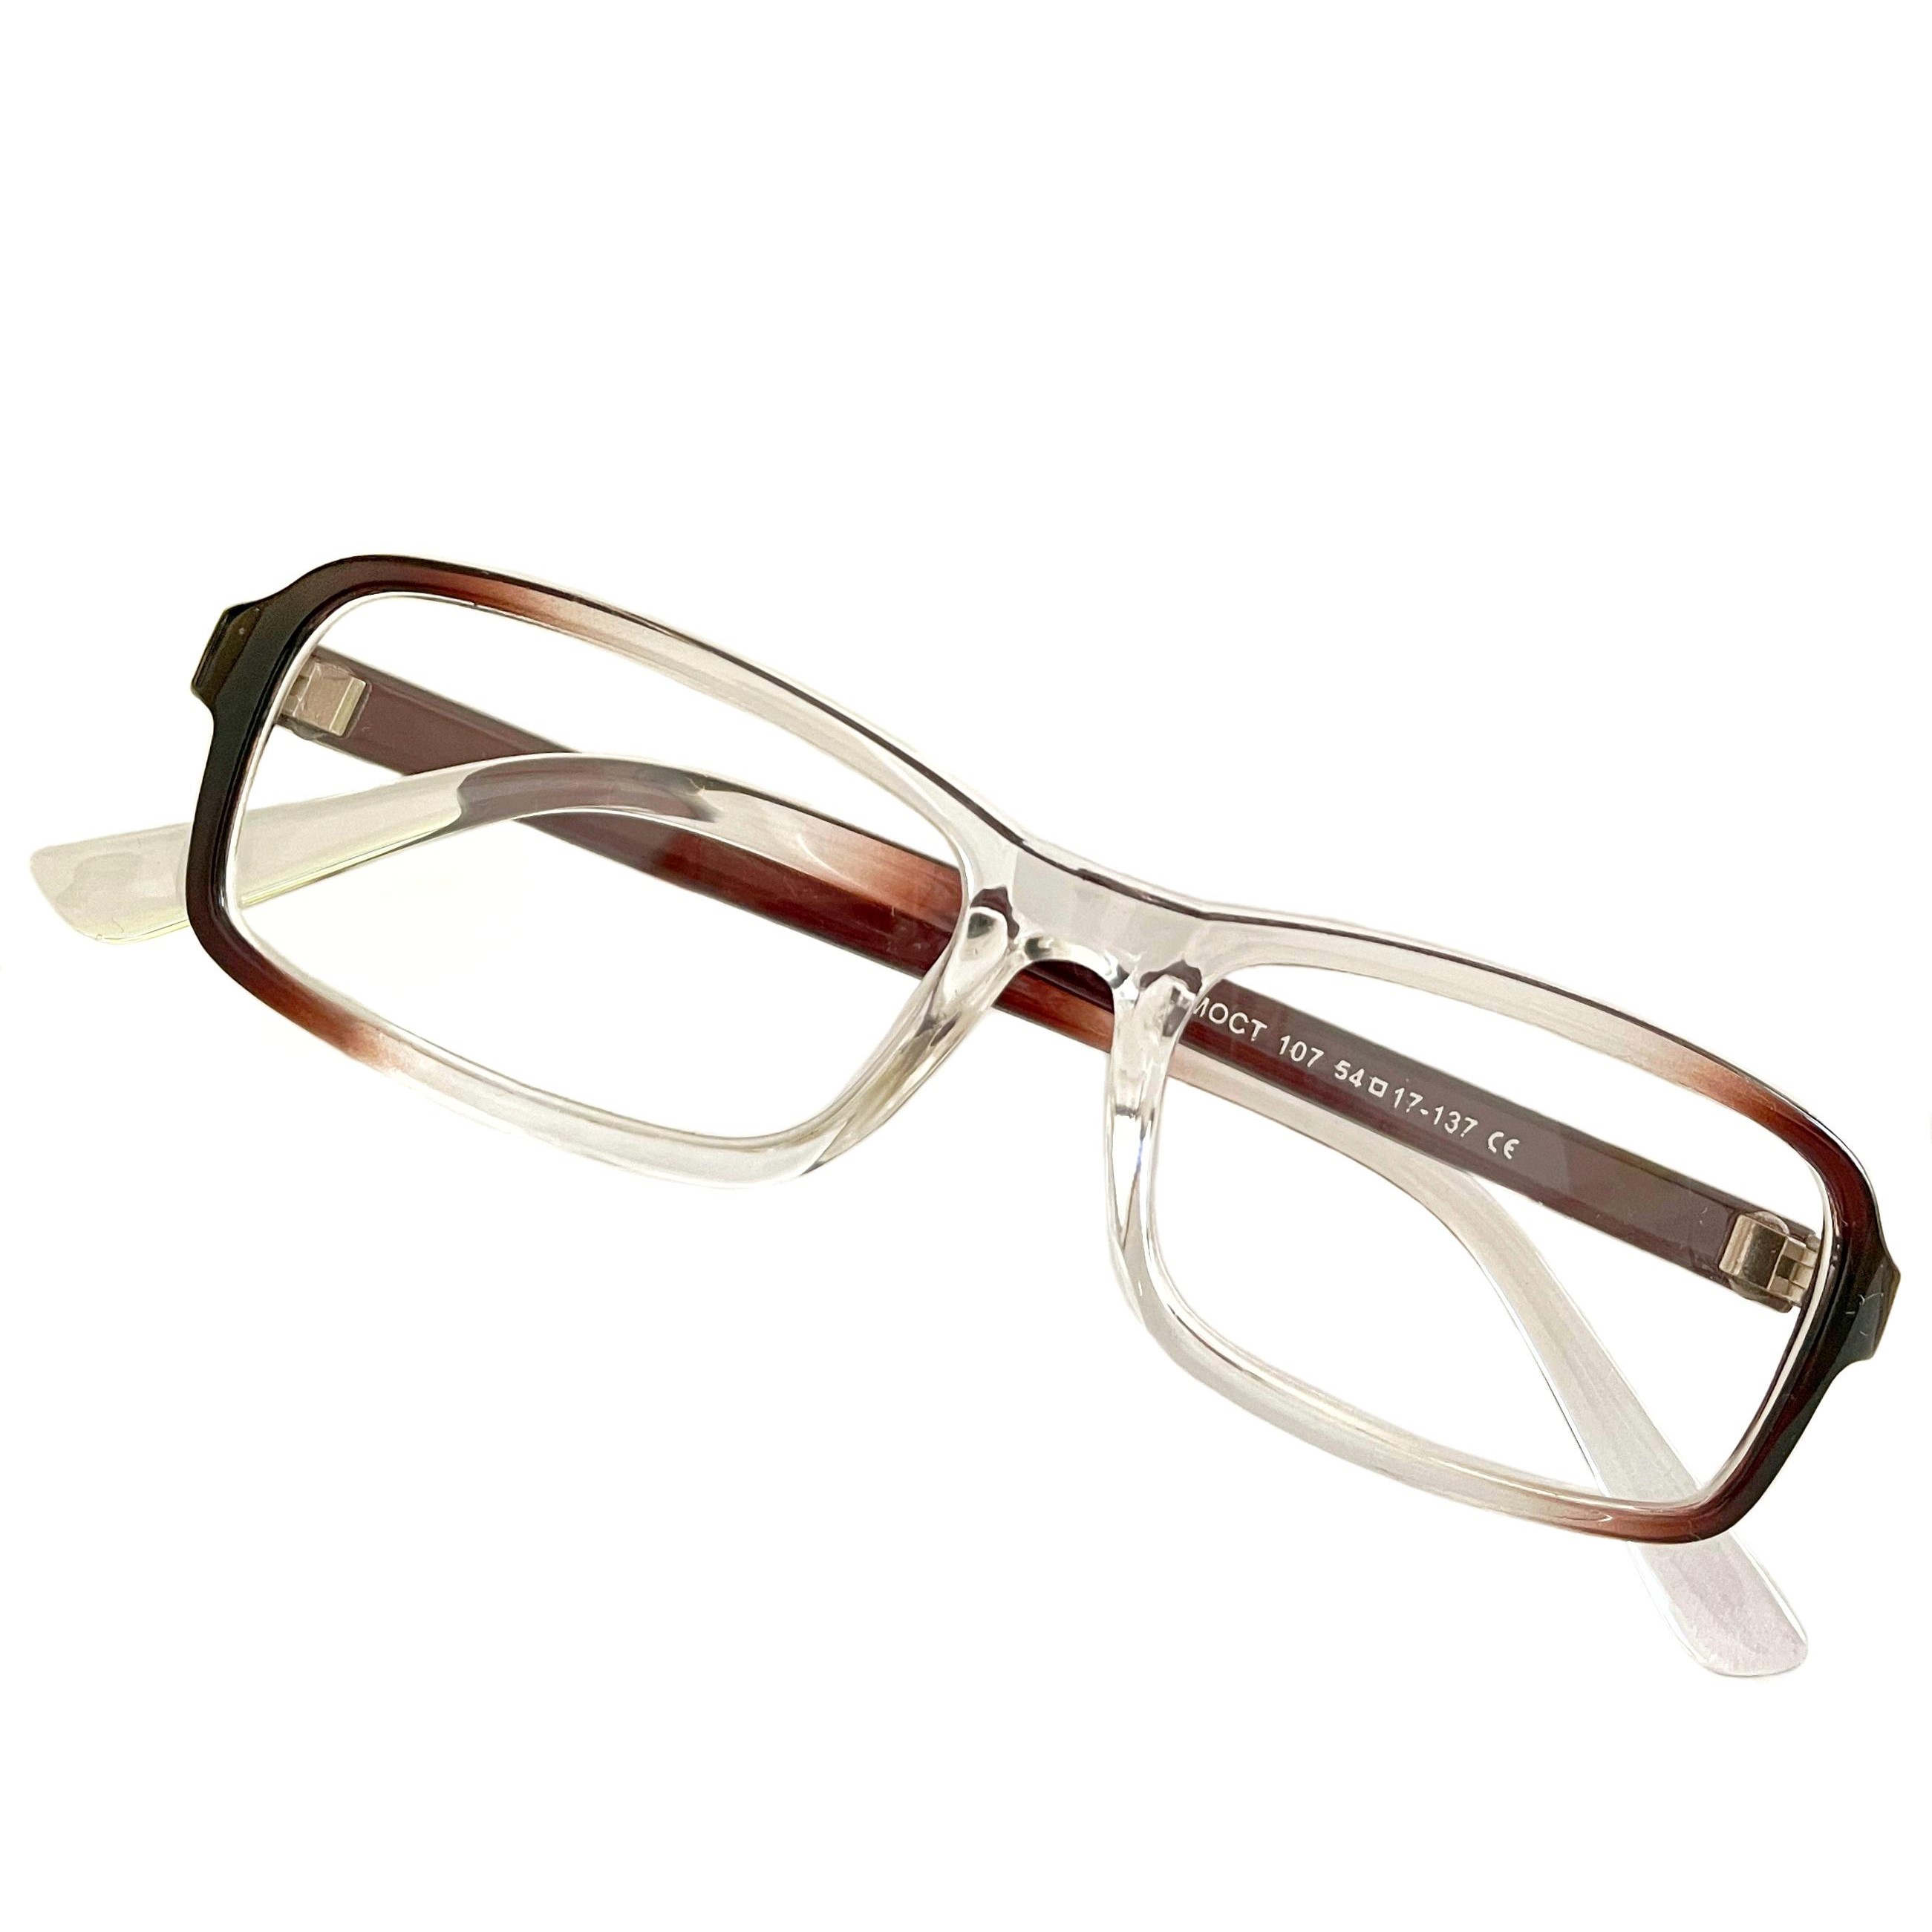 Купить Очки MOCT для зрения, с диоптриями +1, 25 корригирующие для чтения